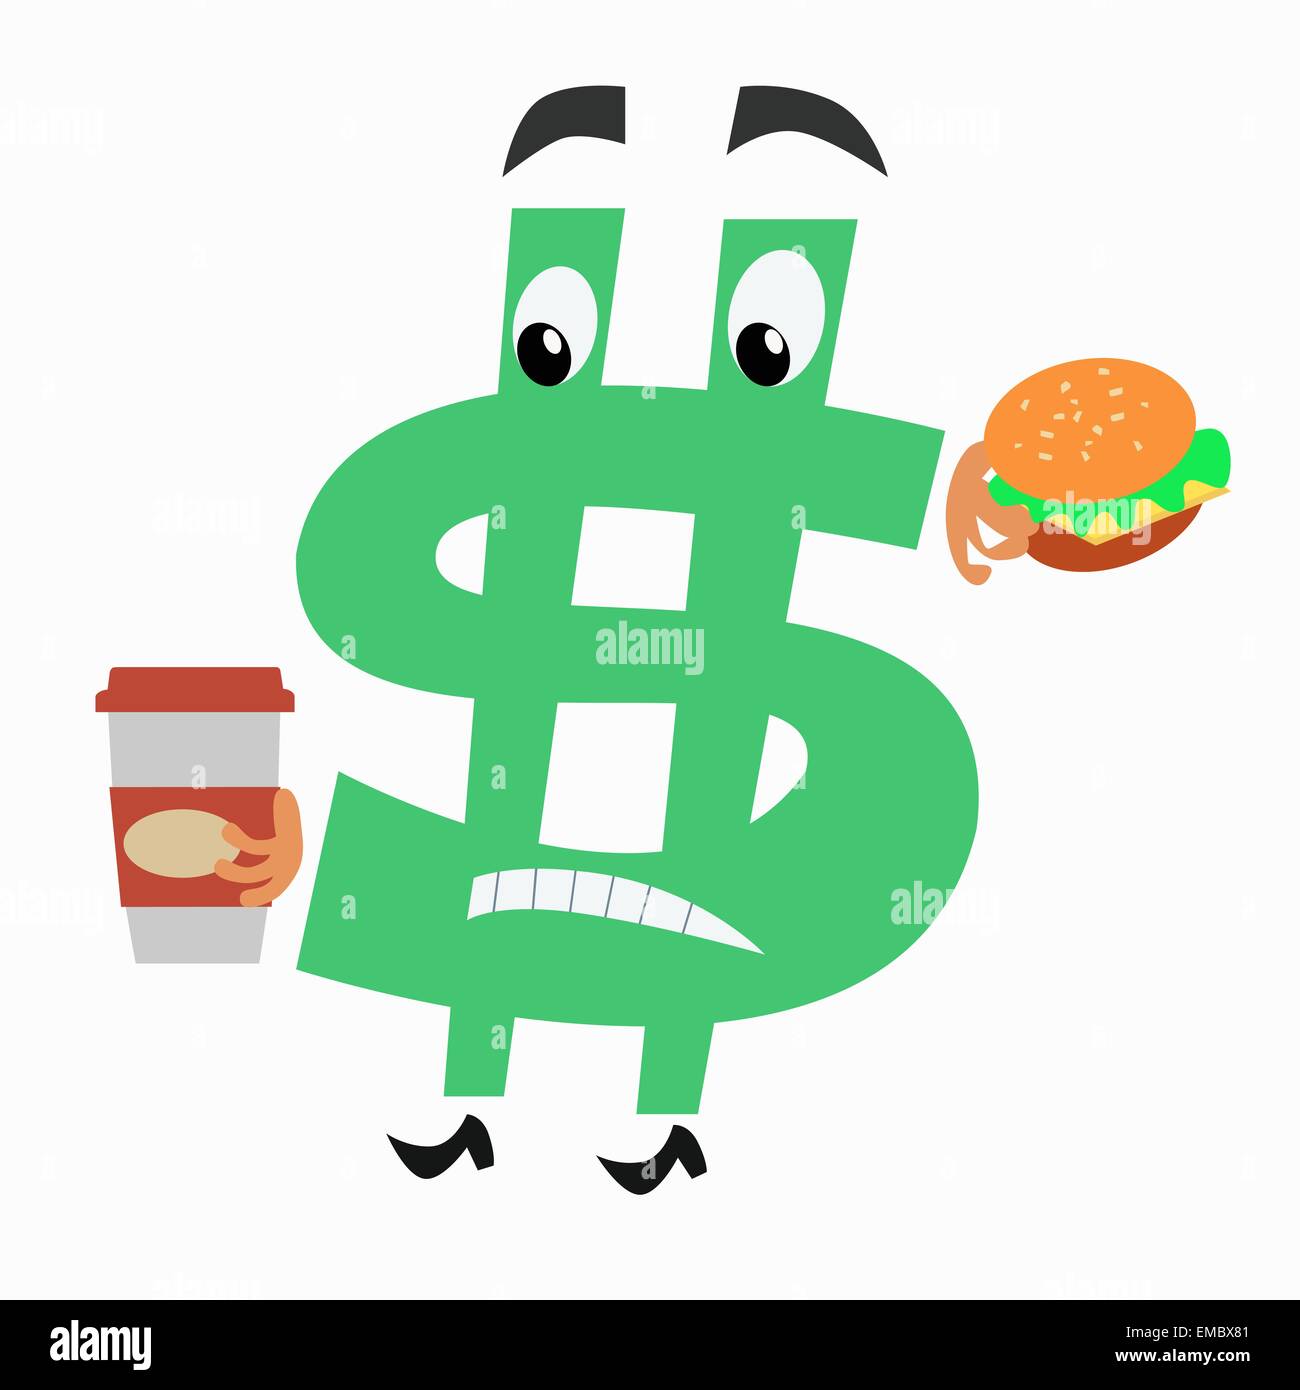 Le personnage est un signe dollar avec un hamburger et une tasse de café. L'administration et des finances. Monnaie nationale Illustration de Vecteur